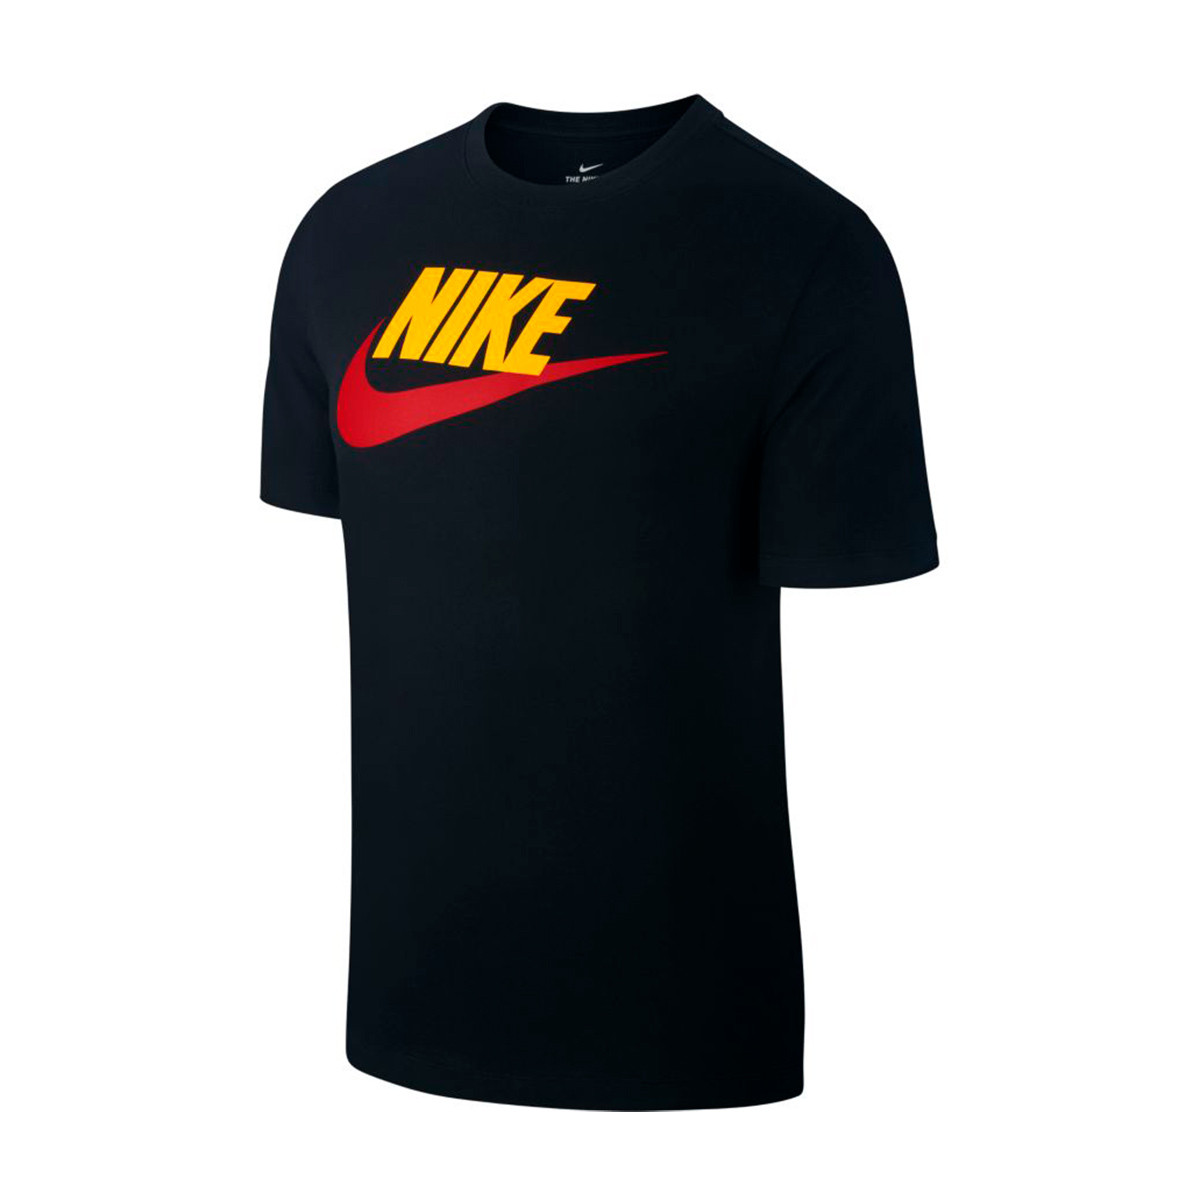 Jersey Nike Sportswear Black-Yellow 